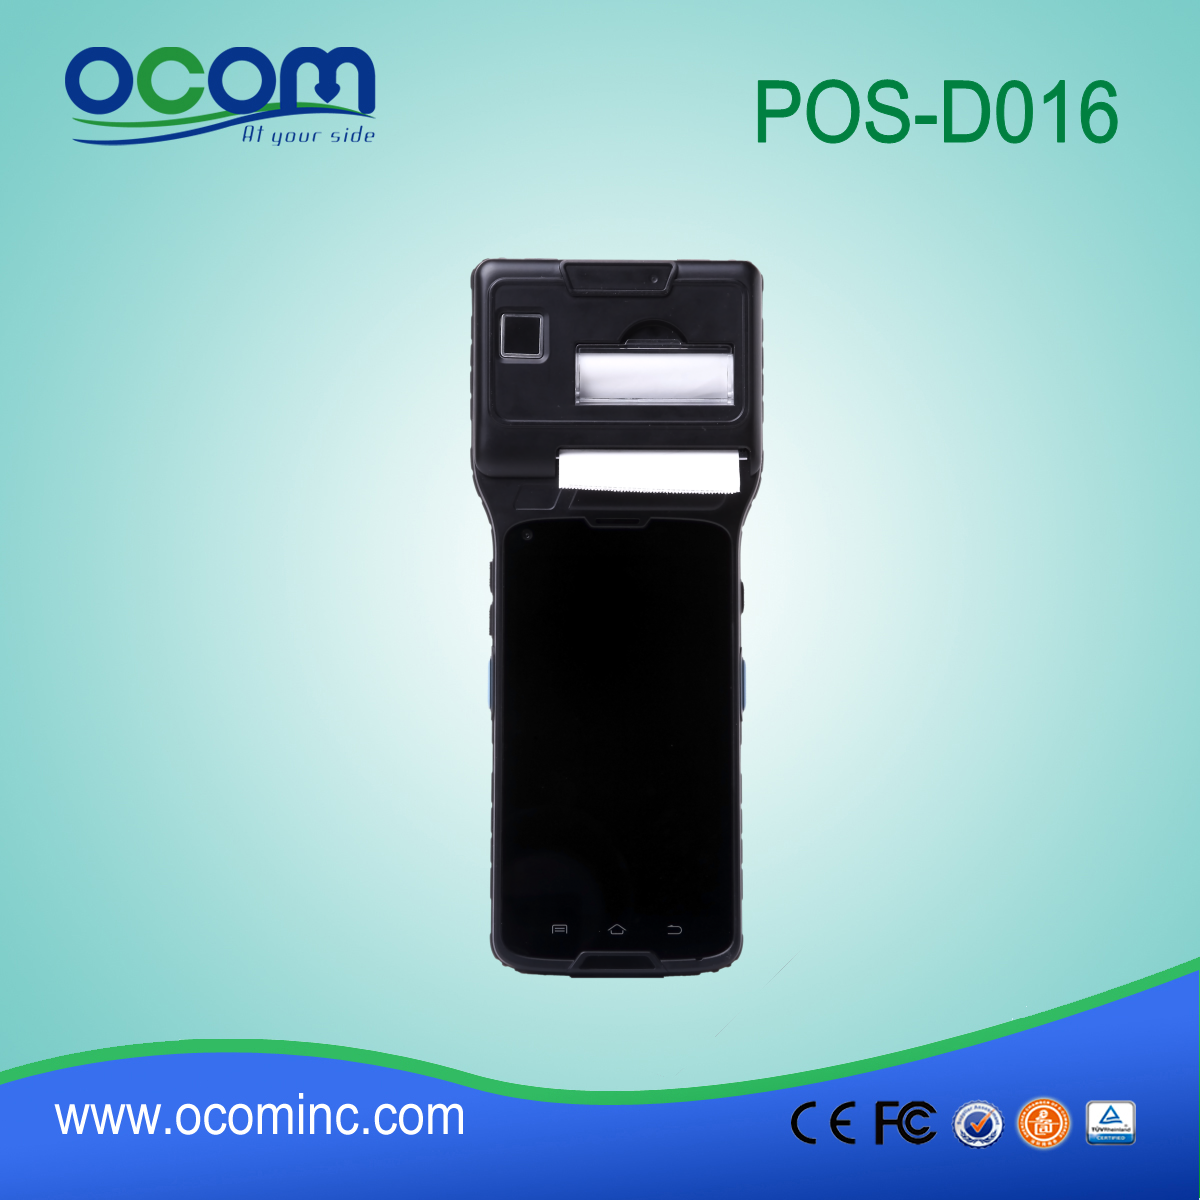 5 '' οθόνη αφής Pos τερματικό με 3G (WCDMA) + WIFI + BT + GPS + κάμερα + θερμικό εκτυπωτή + NFC (OCBs-D016)